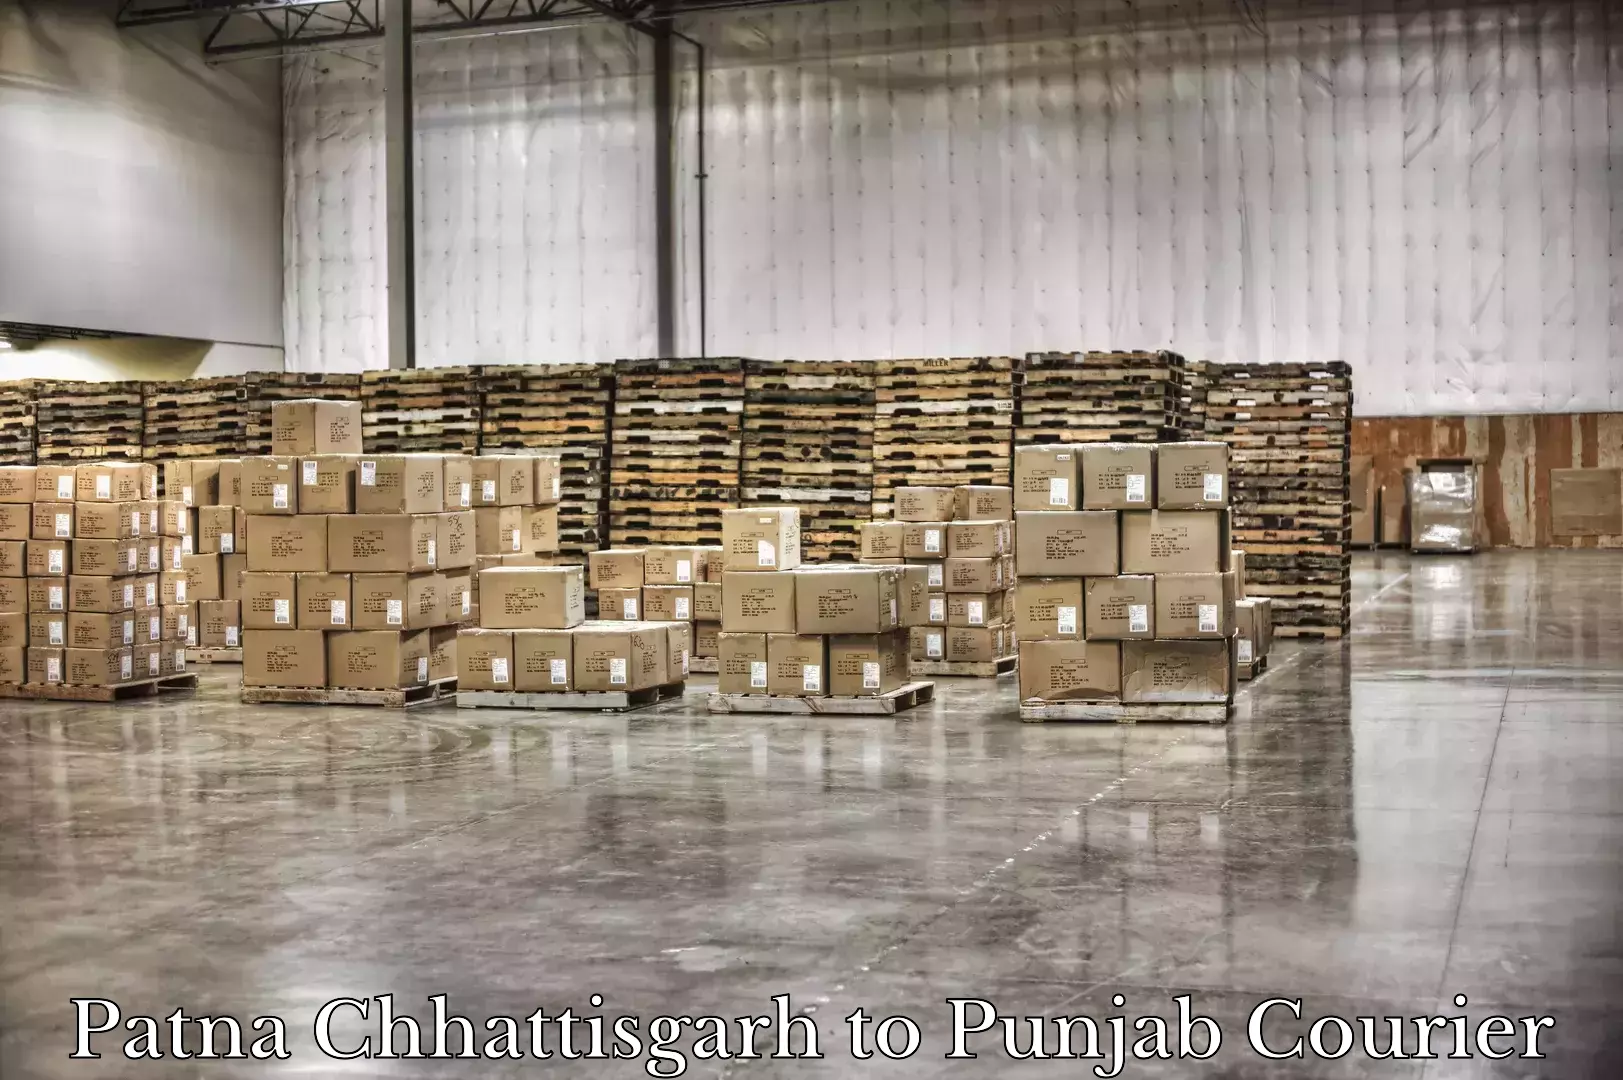 Baggage shipping service Patna Chhattisgarh to Punjab